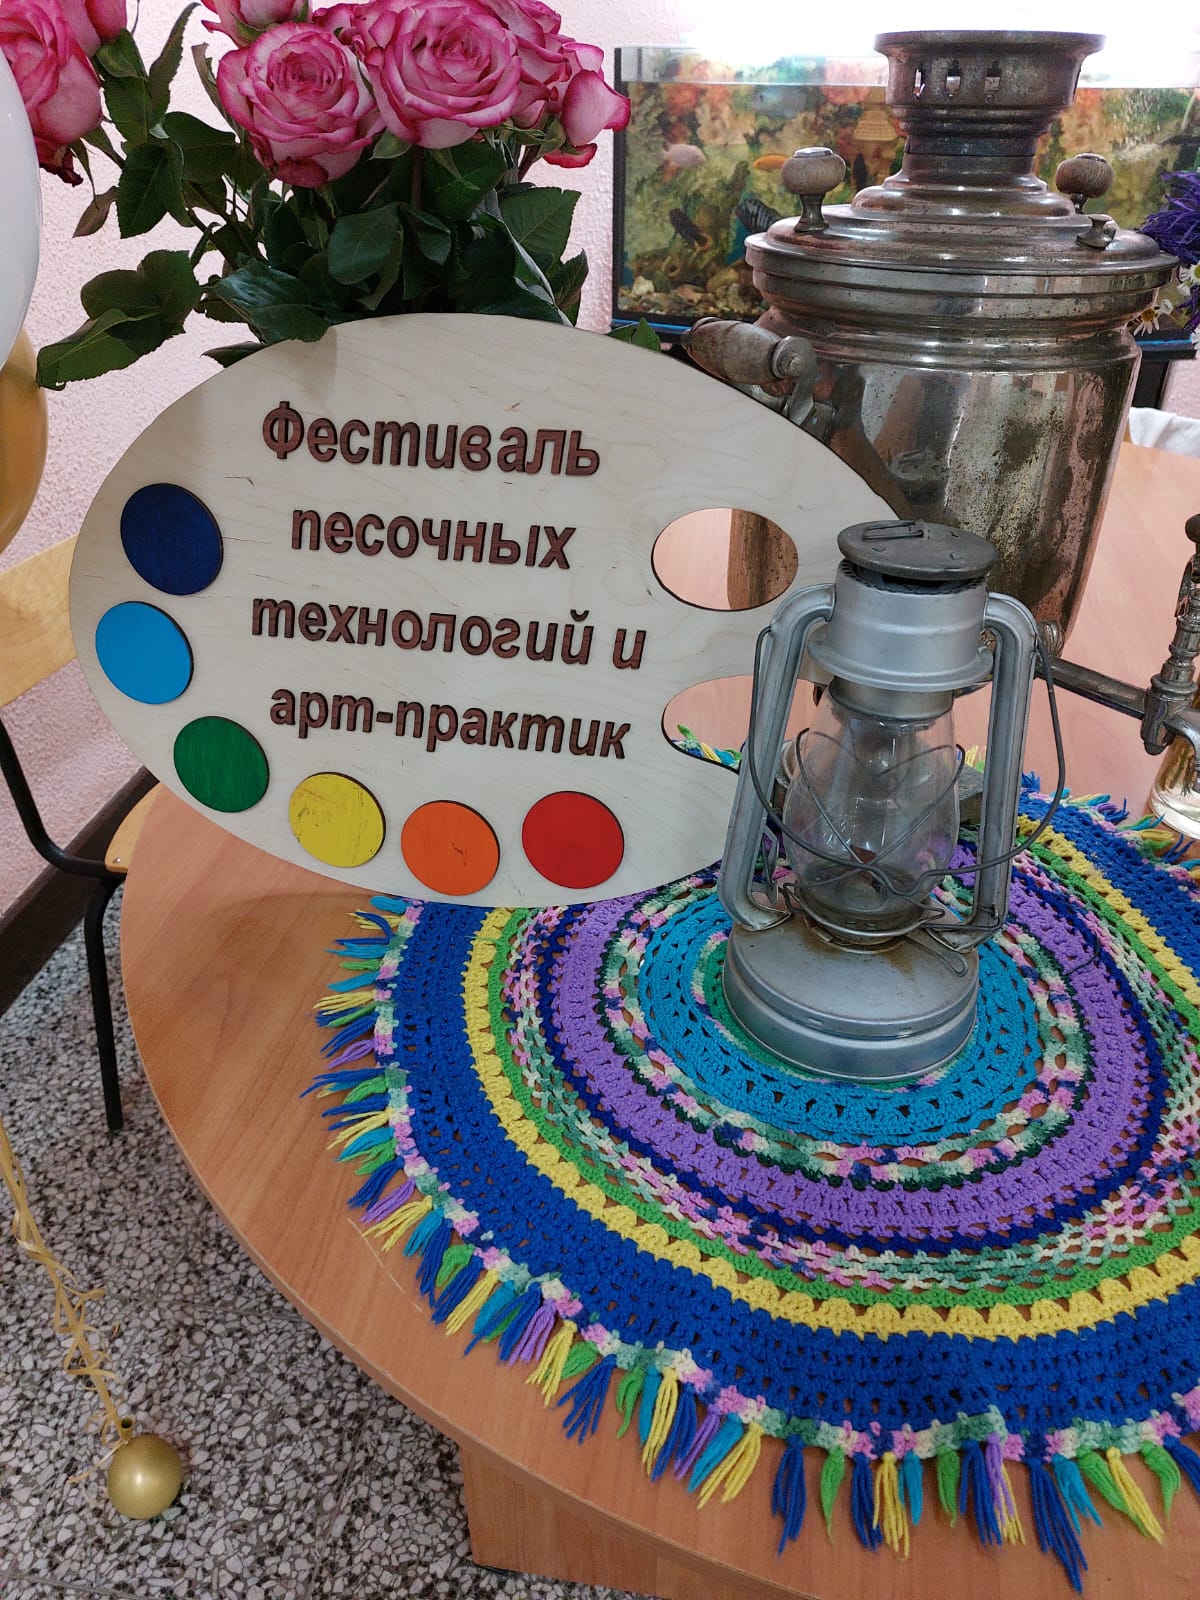 Фестиваль песочных технологий в Костроме